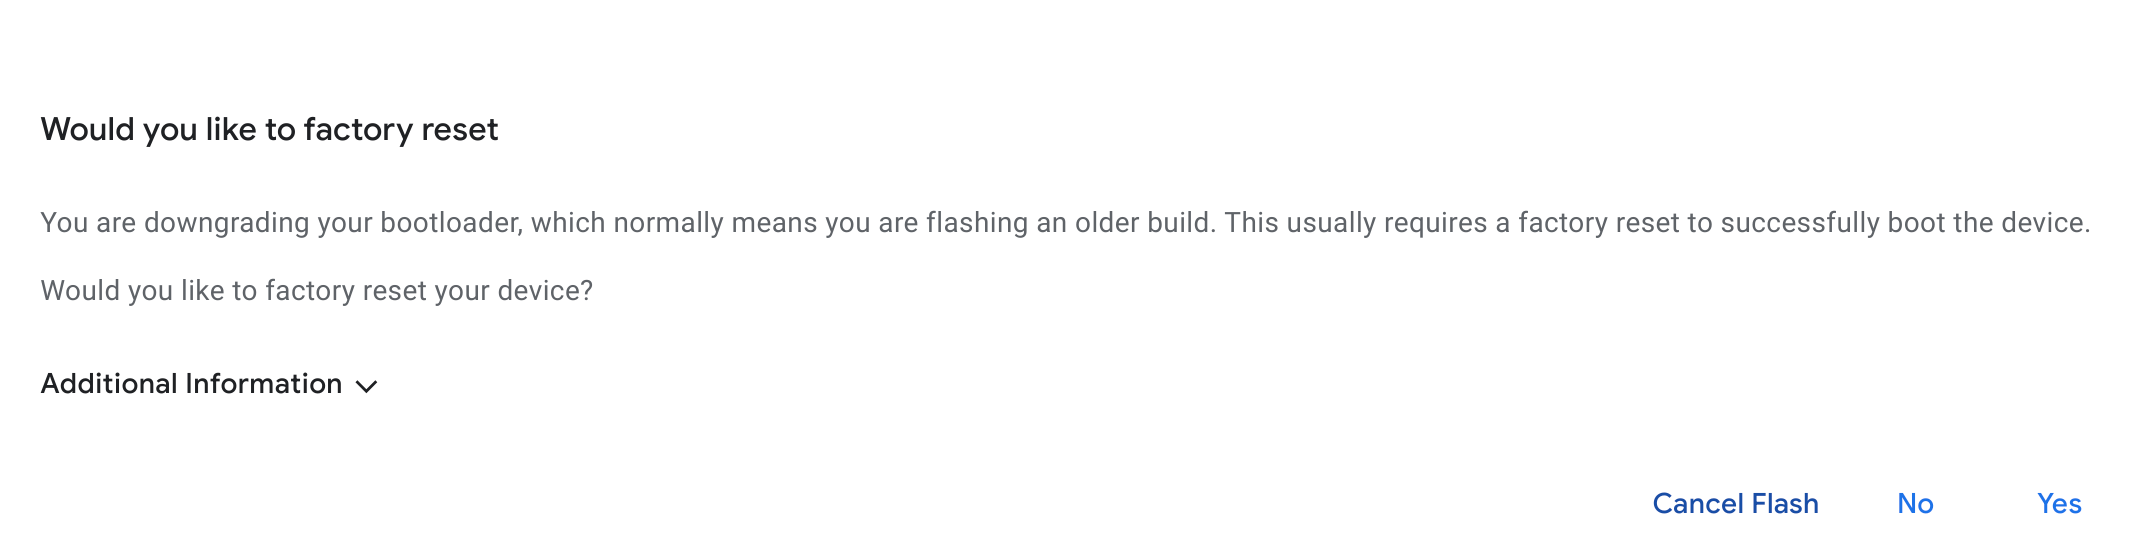 Mensagem da estação de flash perguntando se o dispositivo precisa ser redefinido para a configuração original